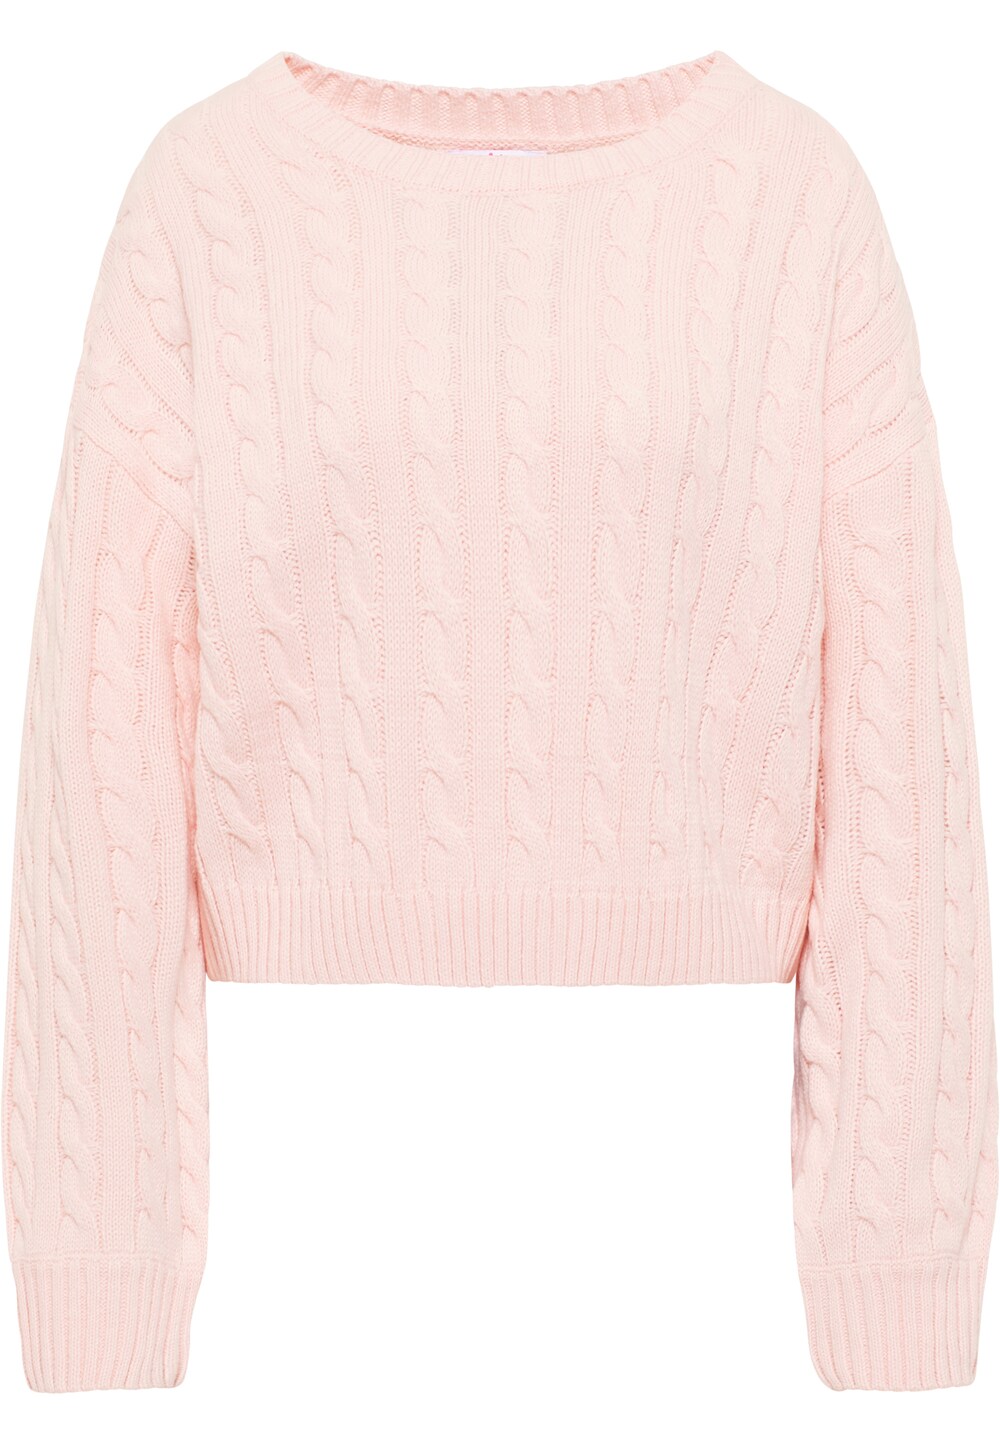 Свитер MYMO, розовый свитер keepsudry mymo розовый